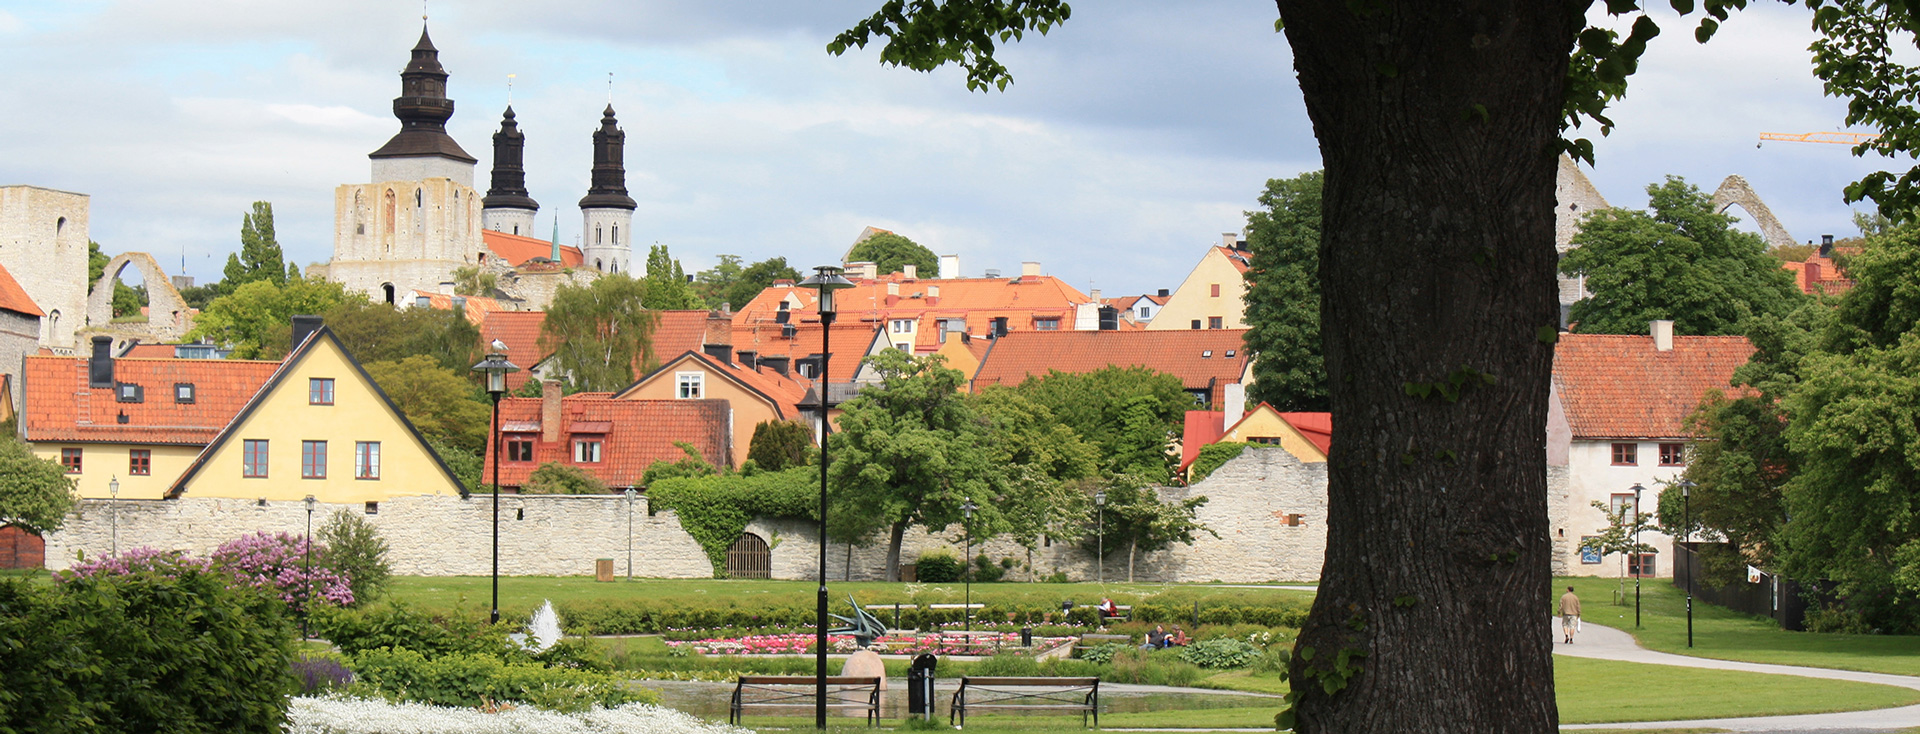 Almedalen i Visby